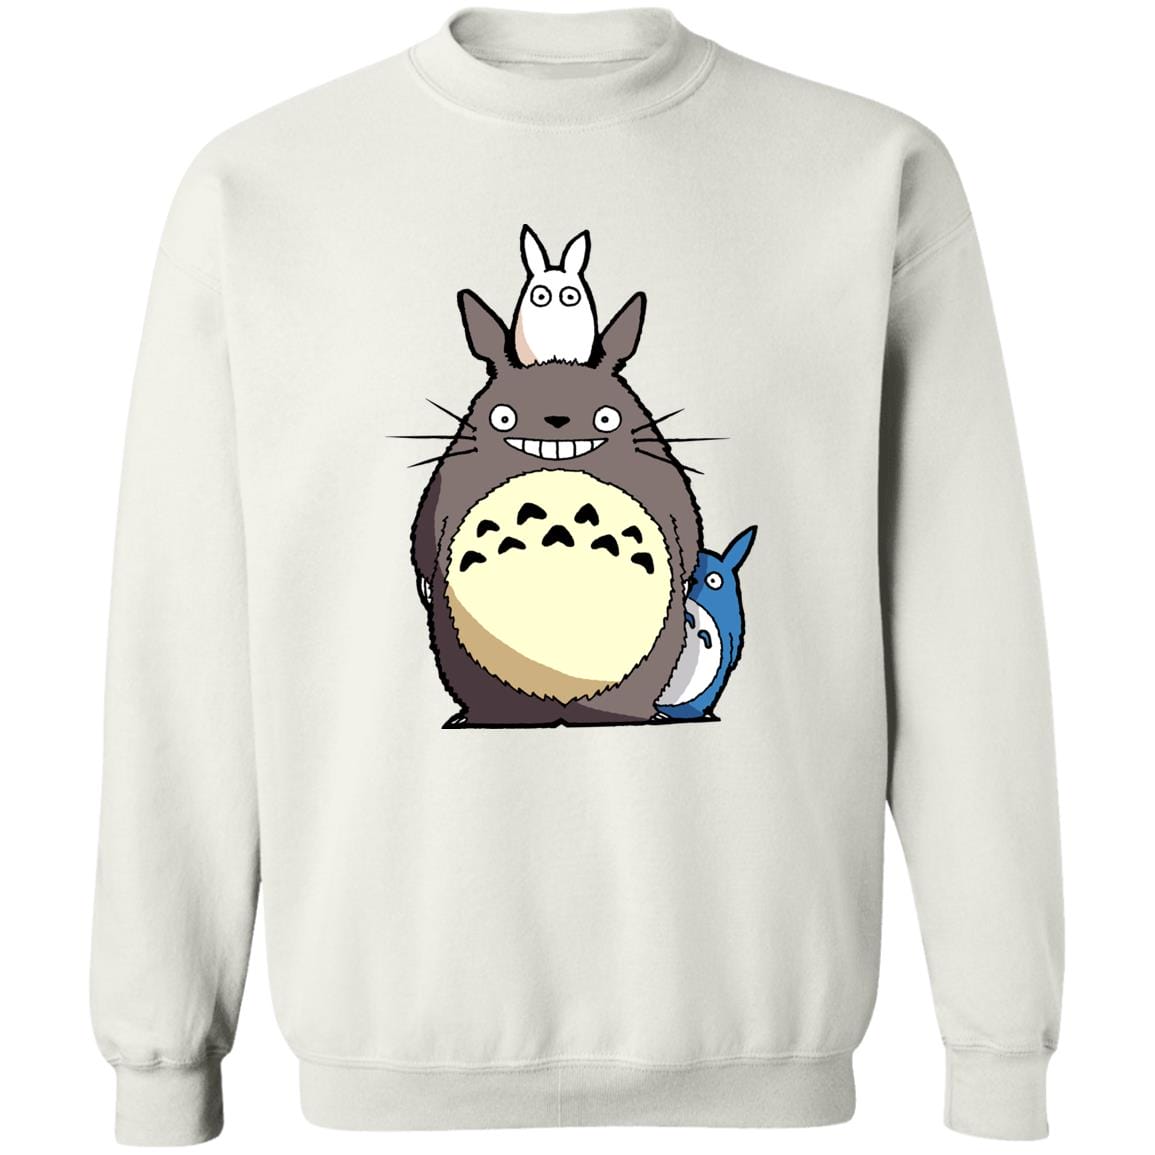 My Neighbor Totoro – Totoro Family Sweatshirt